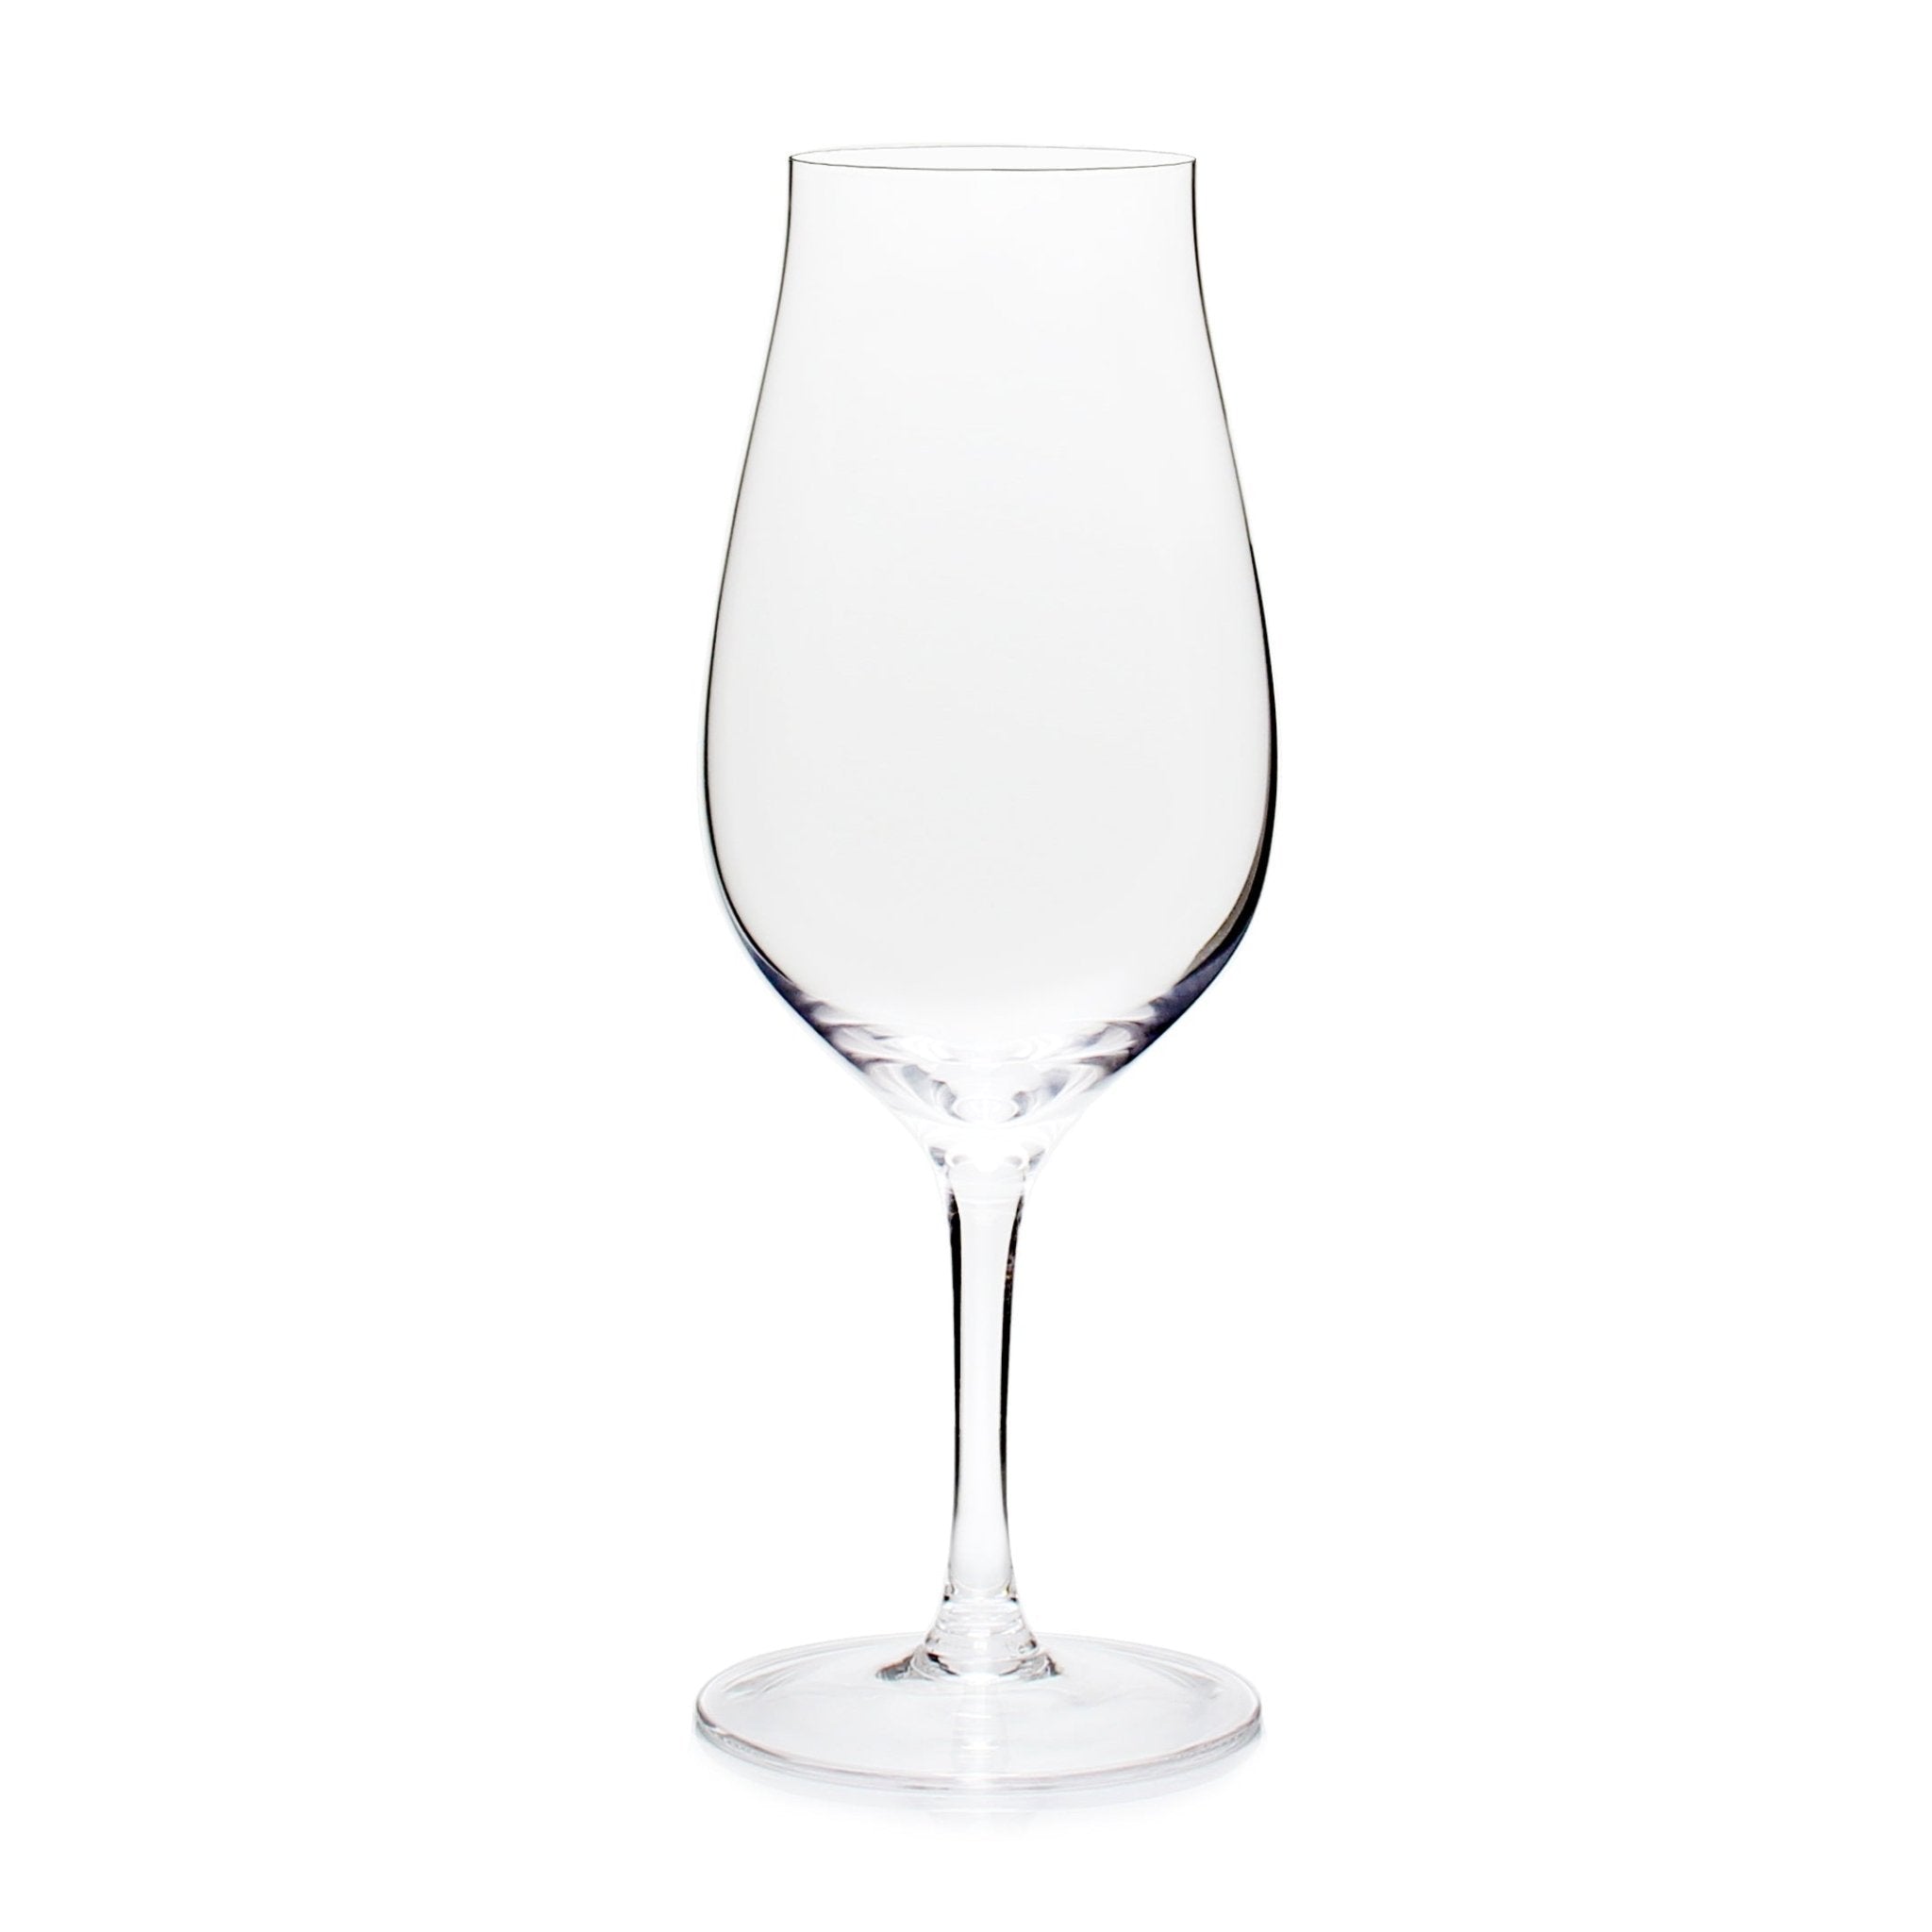 Distiller Cognac/Single Malt Scotch Snifter Glass (Set of 4) - Barware - Tipplergoods